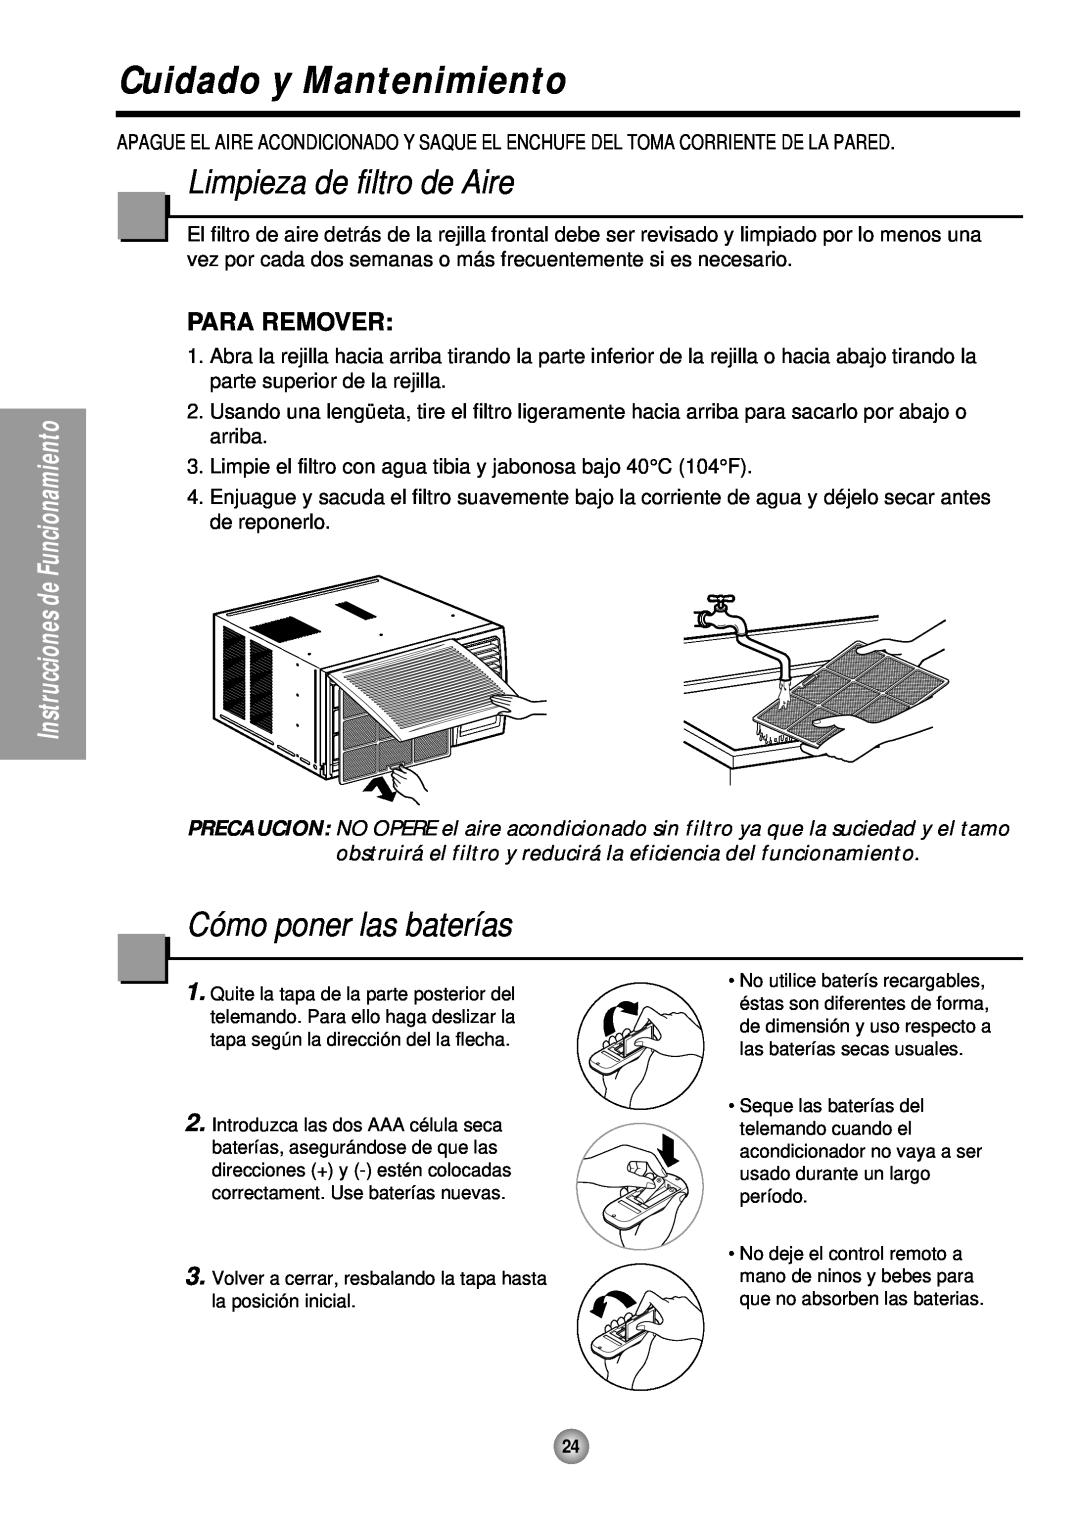 Panasonic CW-XC145HU manual Cuidado y Mantenimiento, Limpieza de filtro de Aire, Cómo poner las baterías, Para Remover 